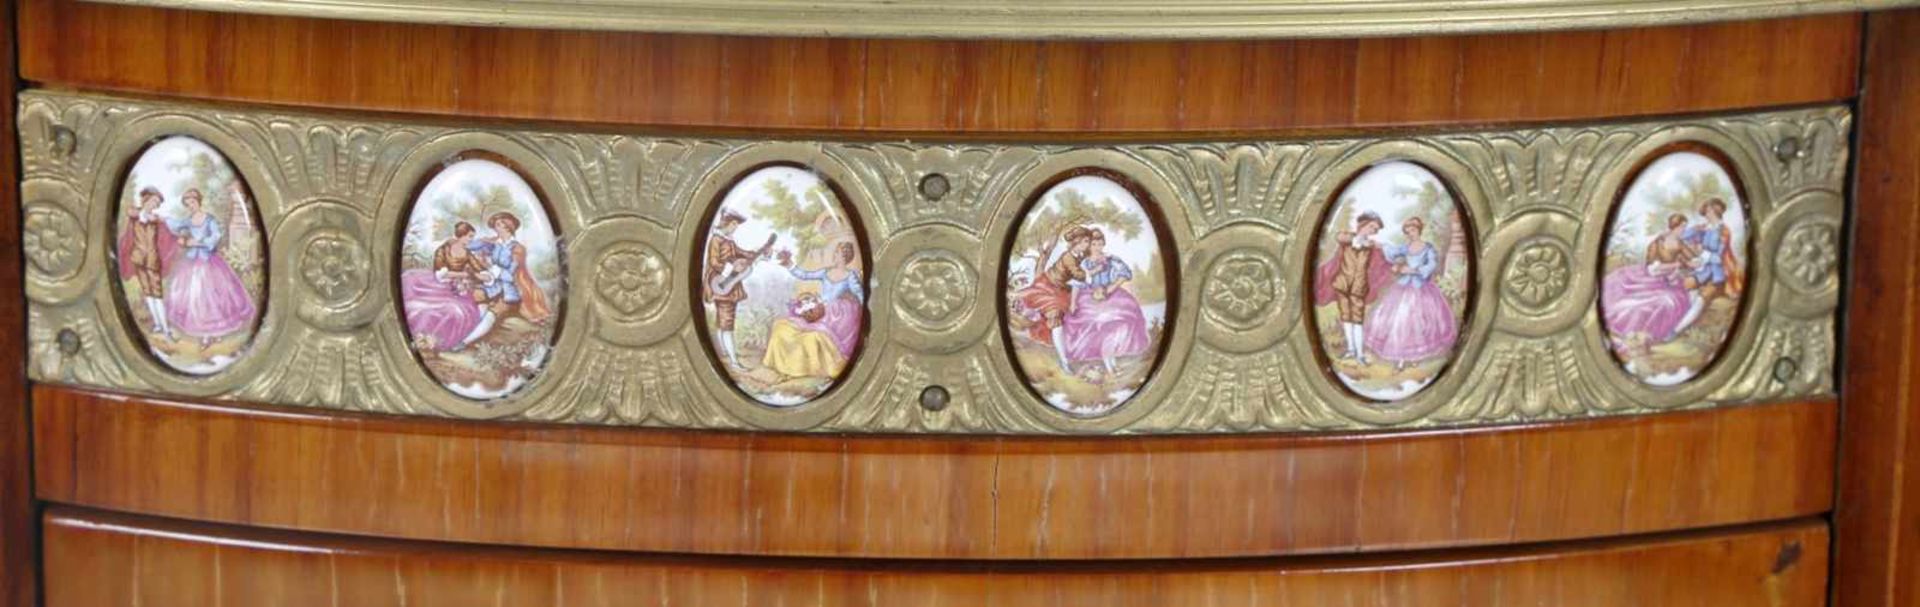 Vornehmer ovaler Ziertisch (Kommödchen), im Stil der franz. Meister um 1770-80, Frankreich 20. Jh. - Bild 2 aus 2